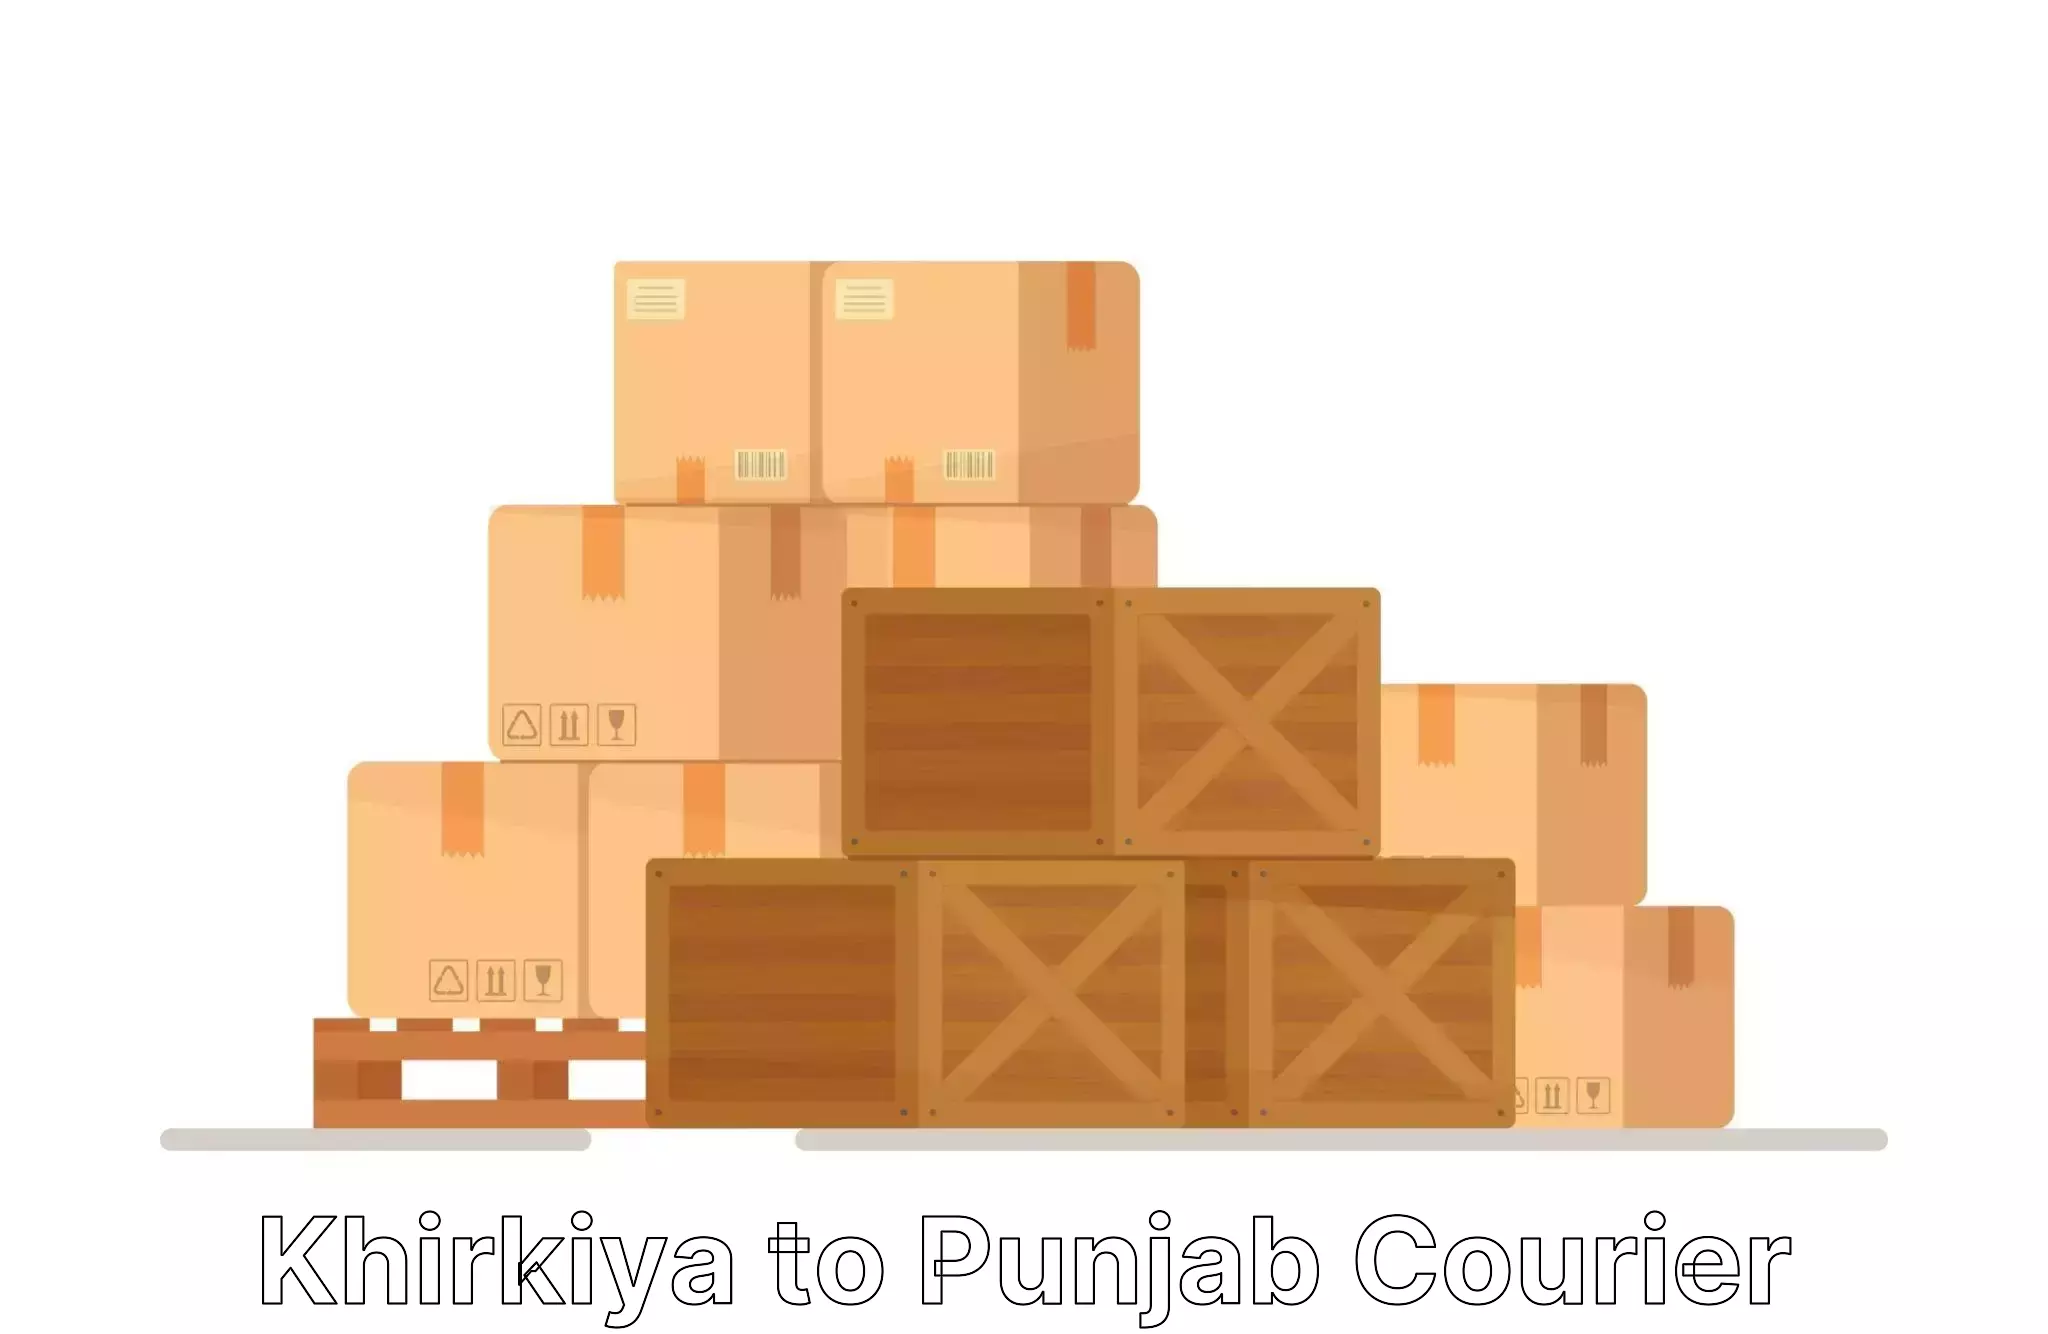 Quality furniture transport Khirkiya to Punjab